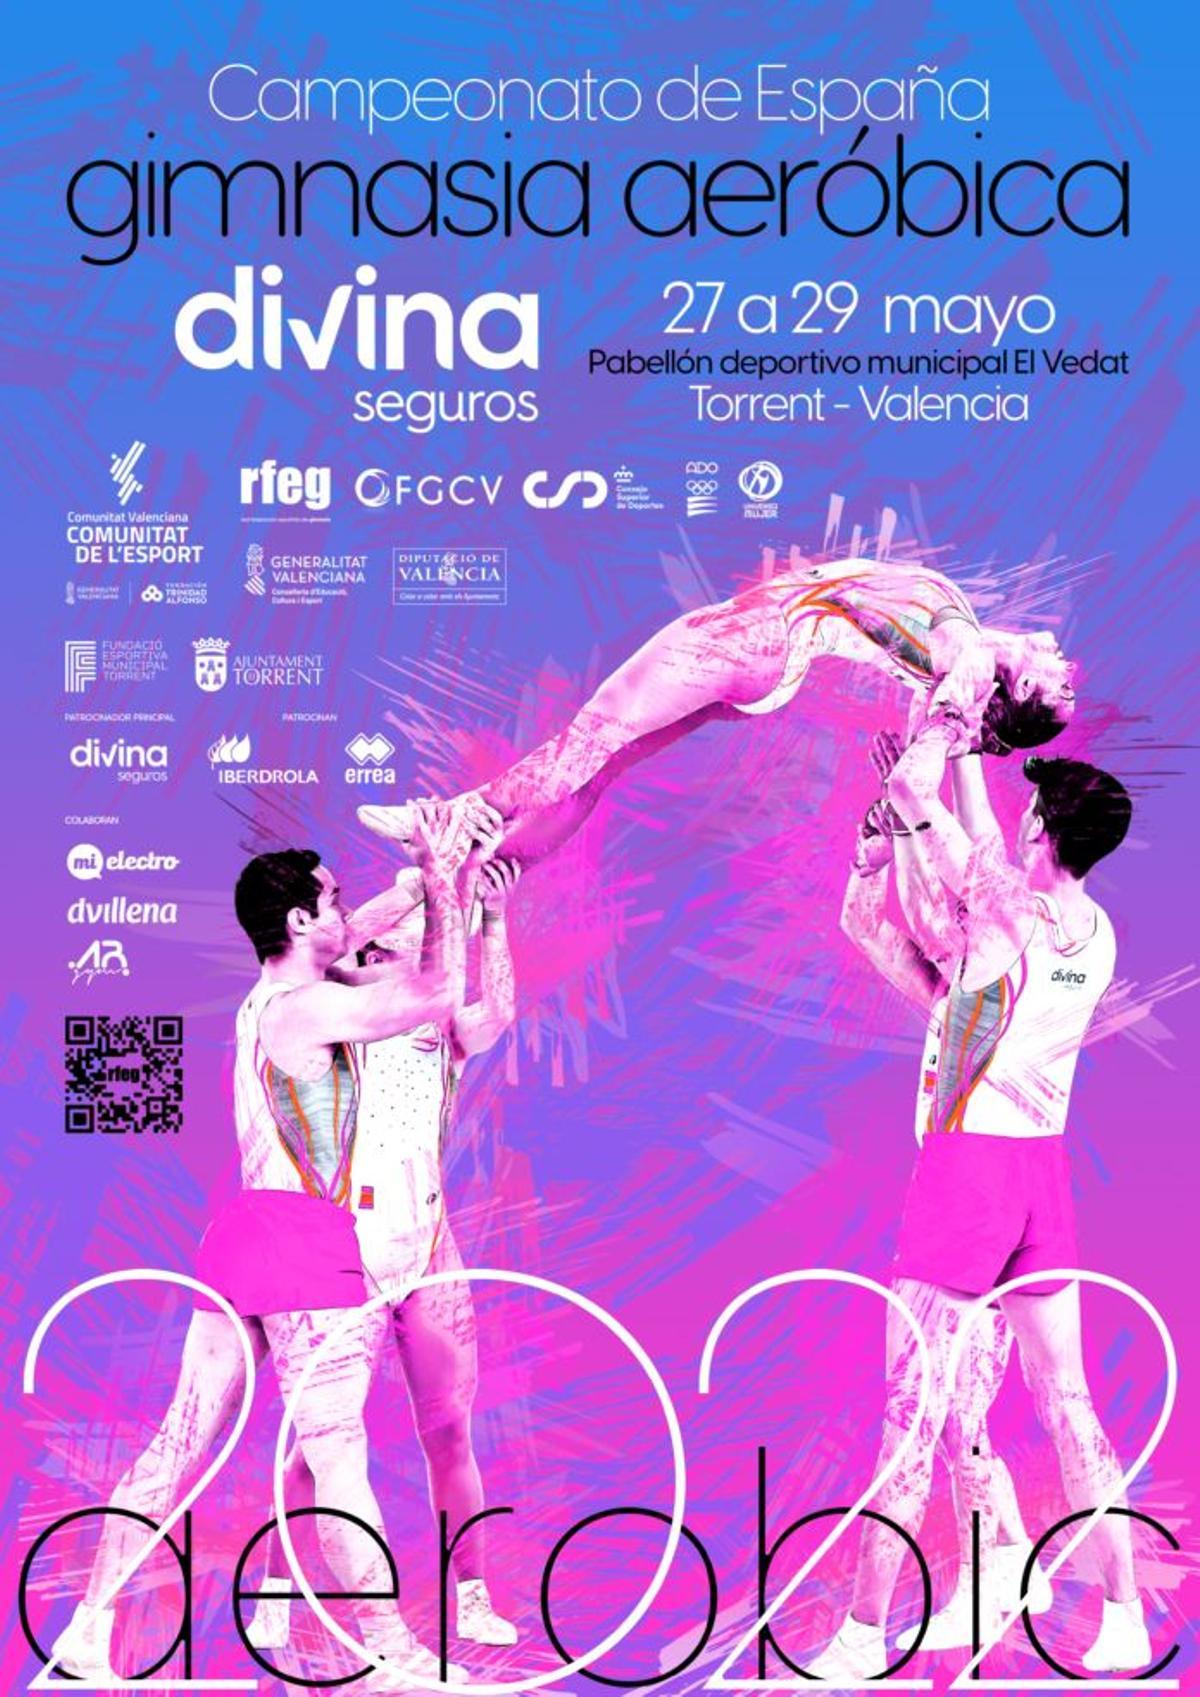 Cartel anunciador del Campeonato de España de Gimnasia aeróbica